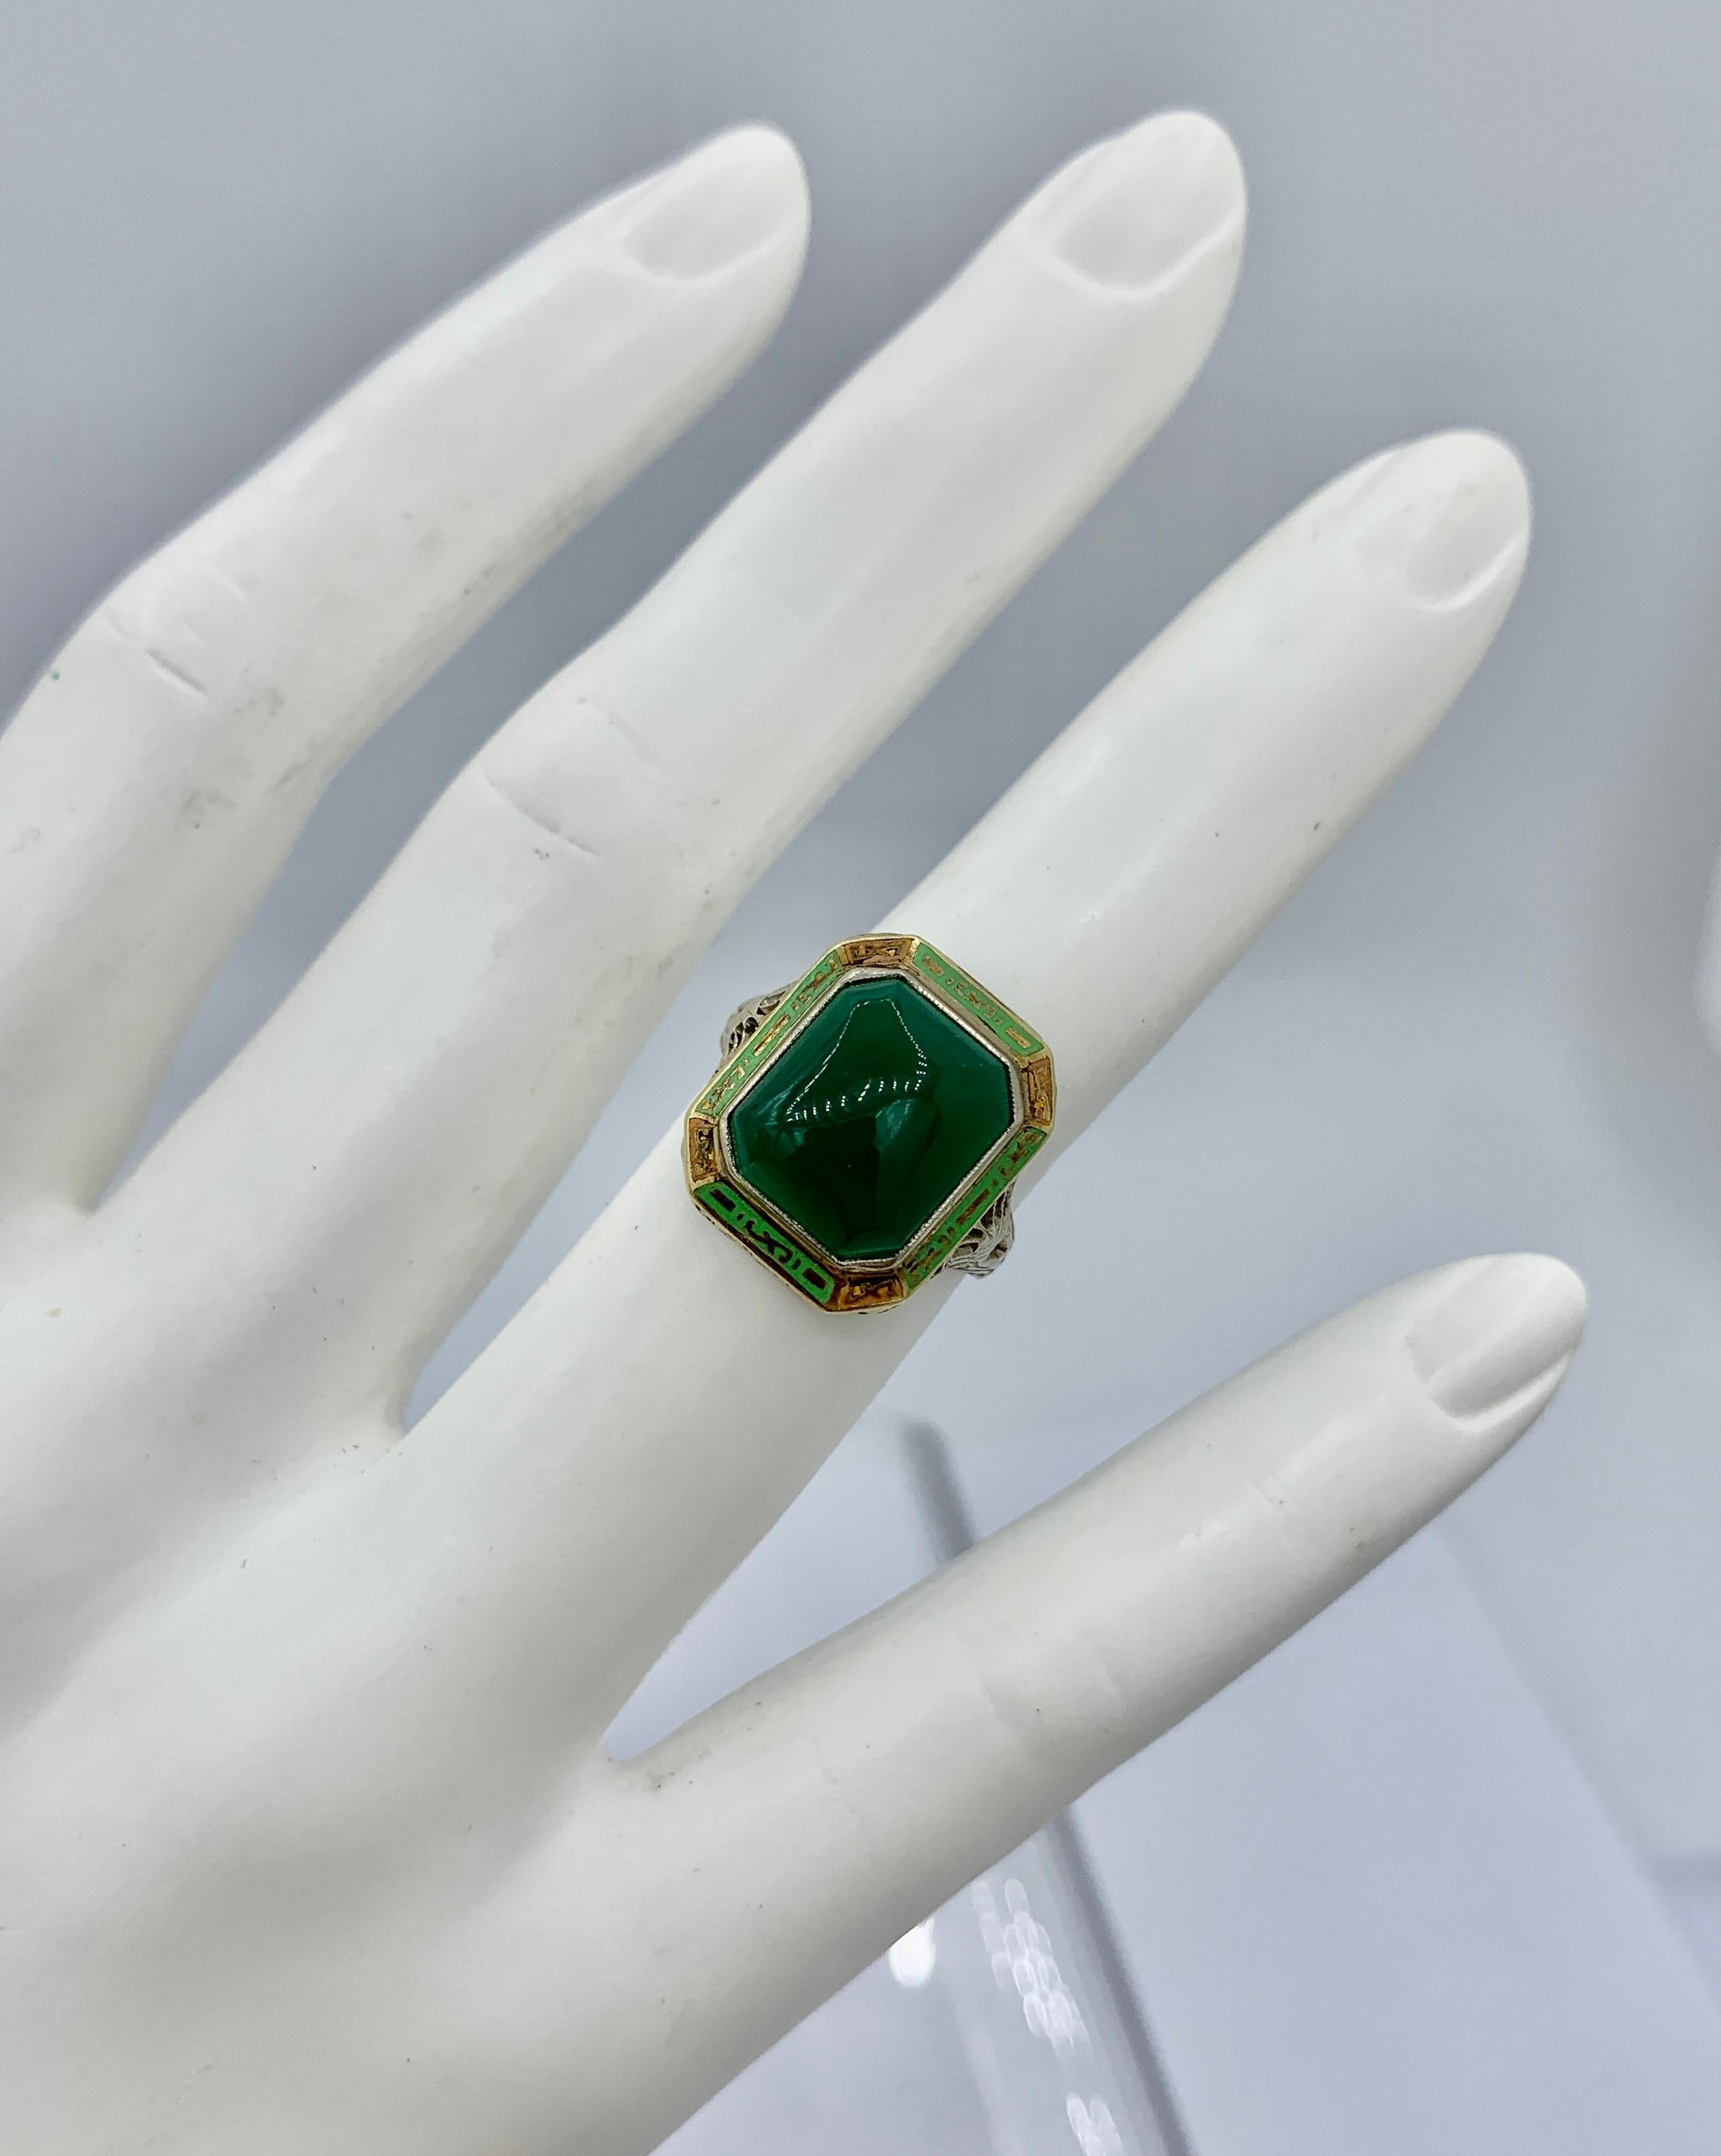 Il s'agit d'une extraordinaire bague ancienne Art Deco en émail avec un magnifique Onyx vert rectangulaire au centre et de superbes décorations en émail vert et orange autour de l'Onyx vert.  L'onyx vert est une pierre précieuse étonnante, d'une